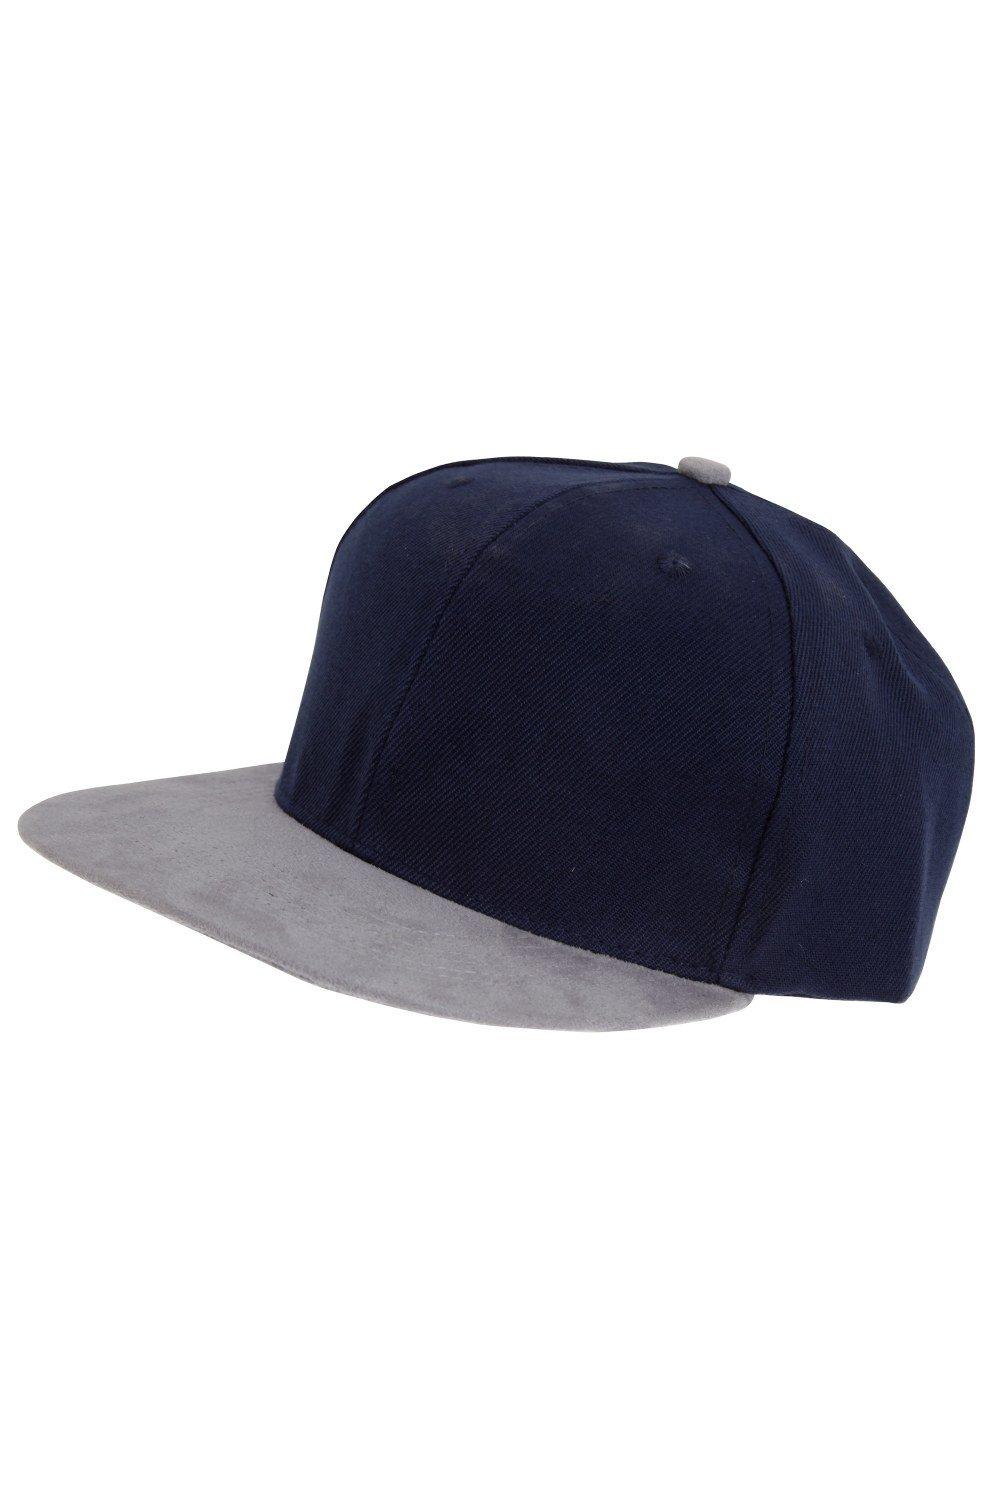 бейсбольная кепка snapback с логотипом q band queen черный Бейсбольная кепка Snapback Tom Franks, темно-синий